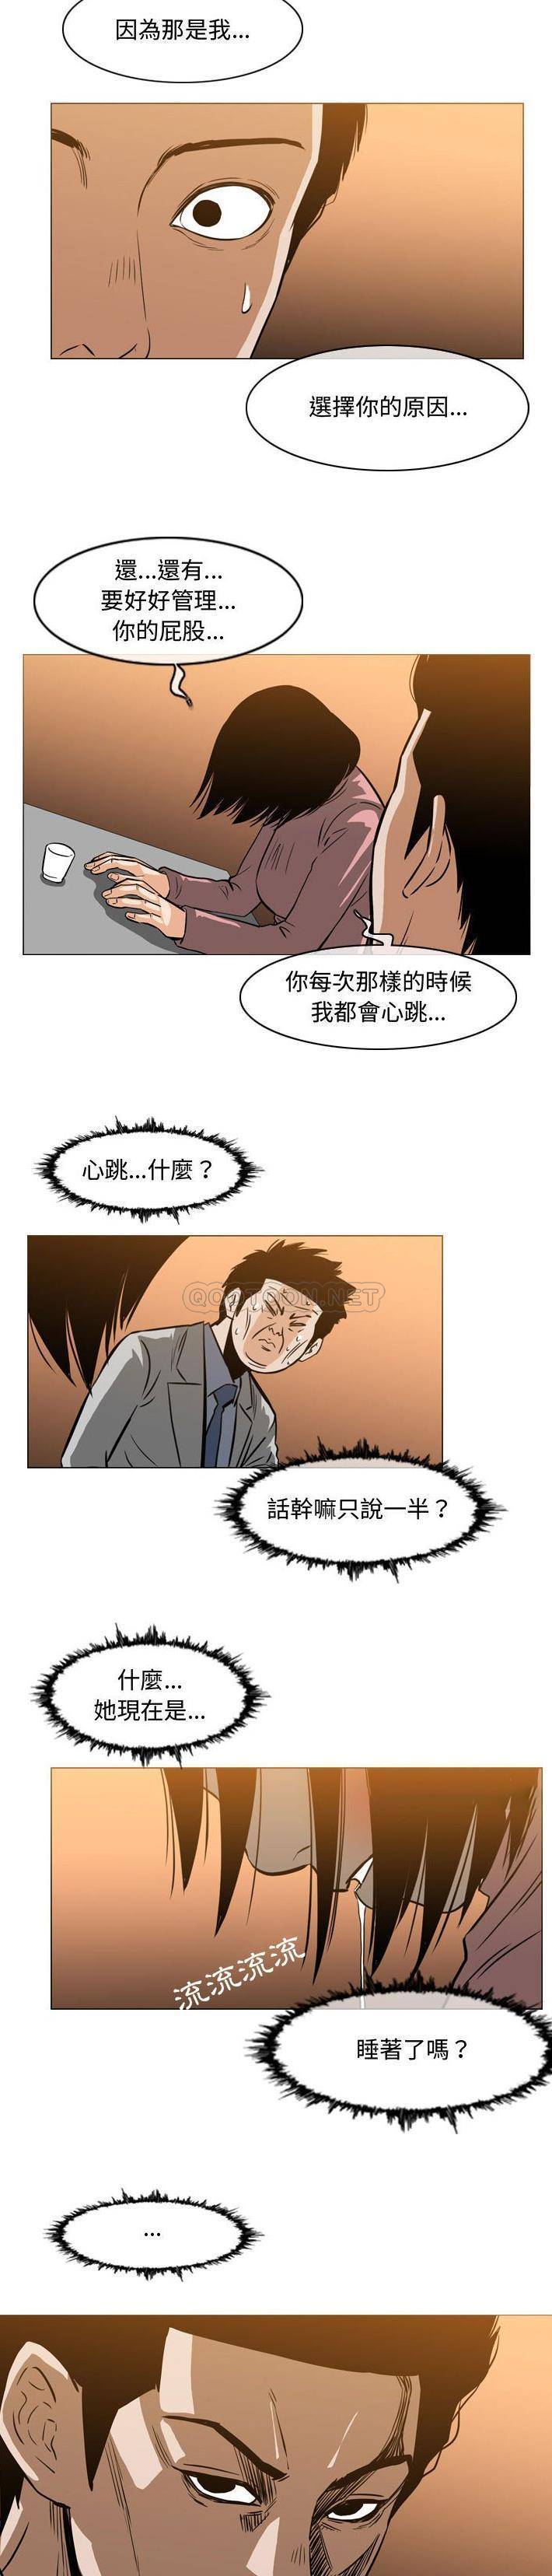 韩国污漫画 惡劣時代 第24话 14